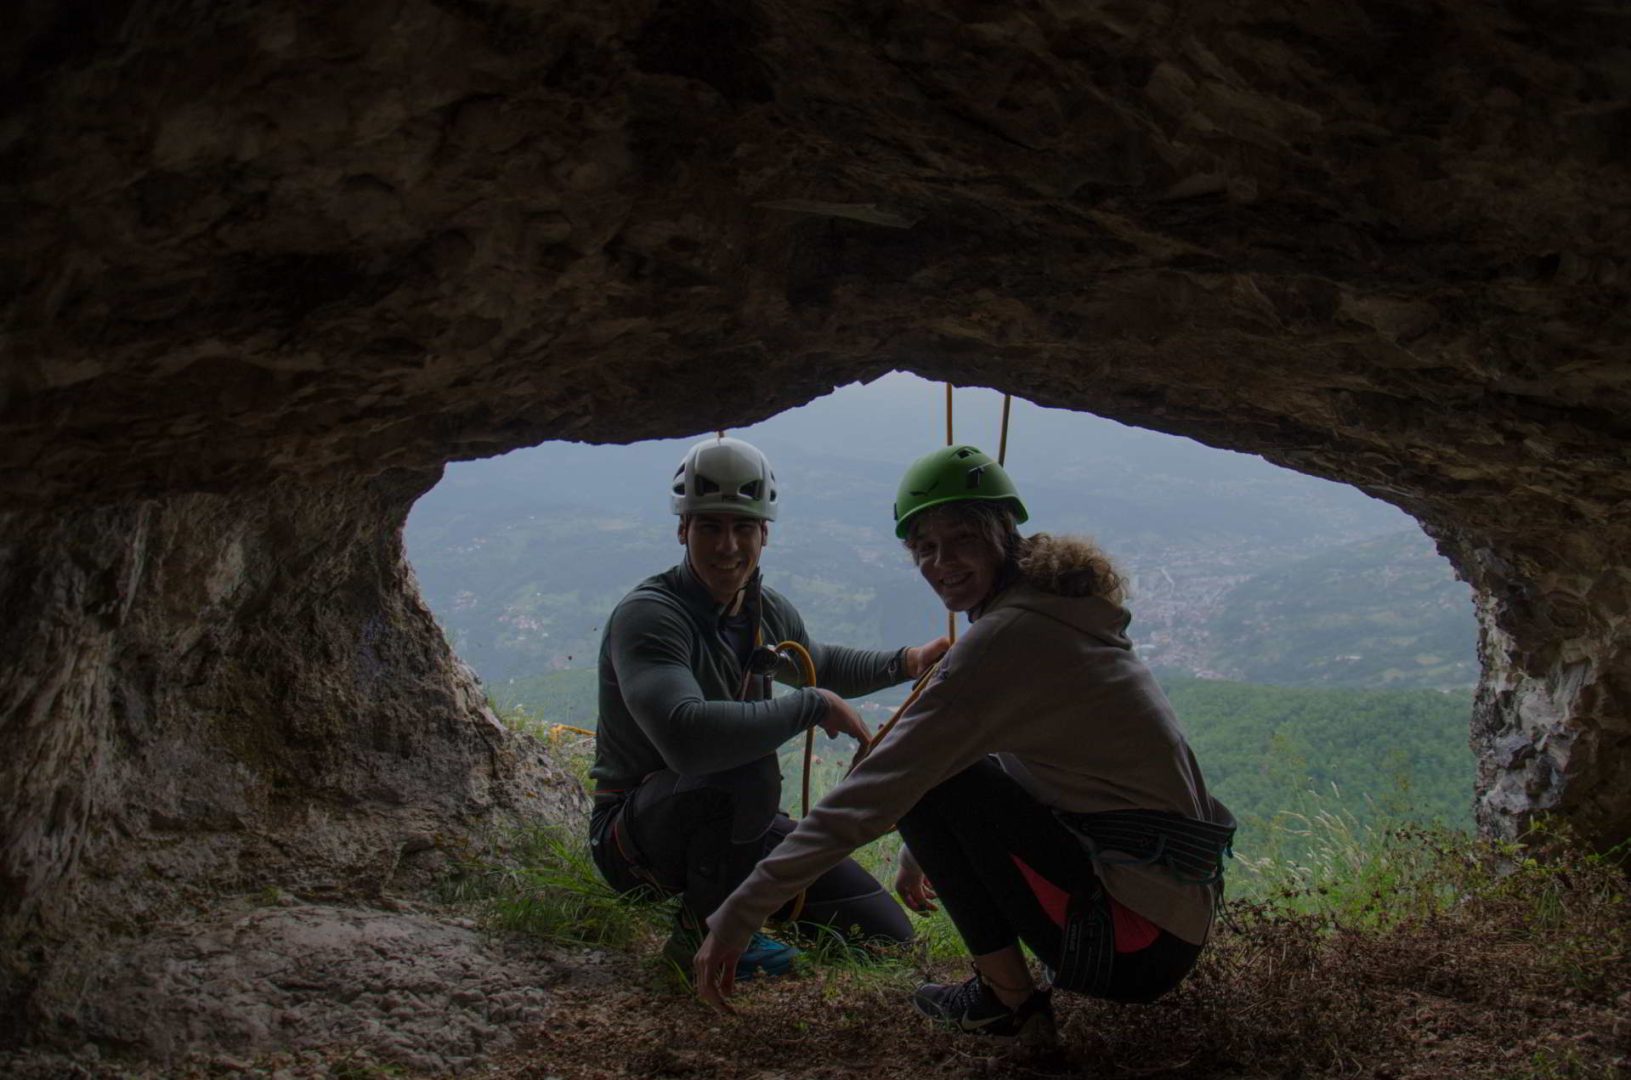 Dvoje ljudi u otvor stene u obliku pećine